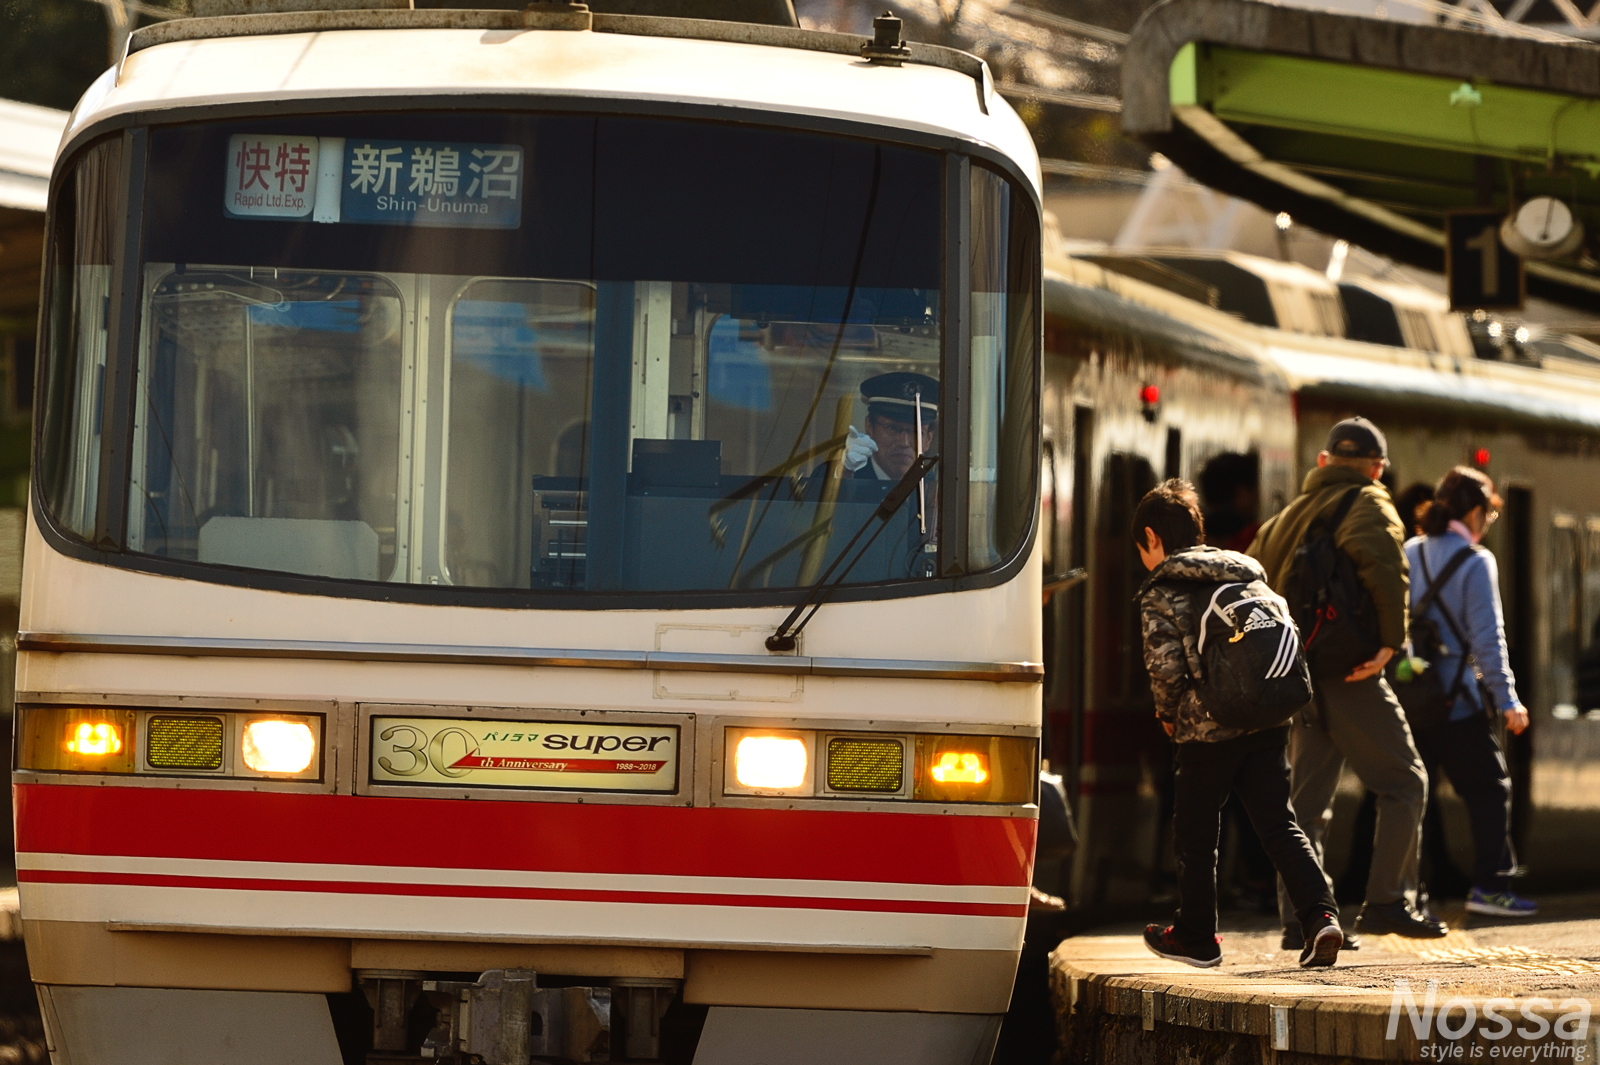 【愛知の鉄道風景】名古屋鉄道特急パノラマスーパー1131Fを撮り鉄してきた